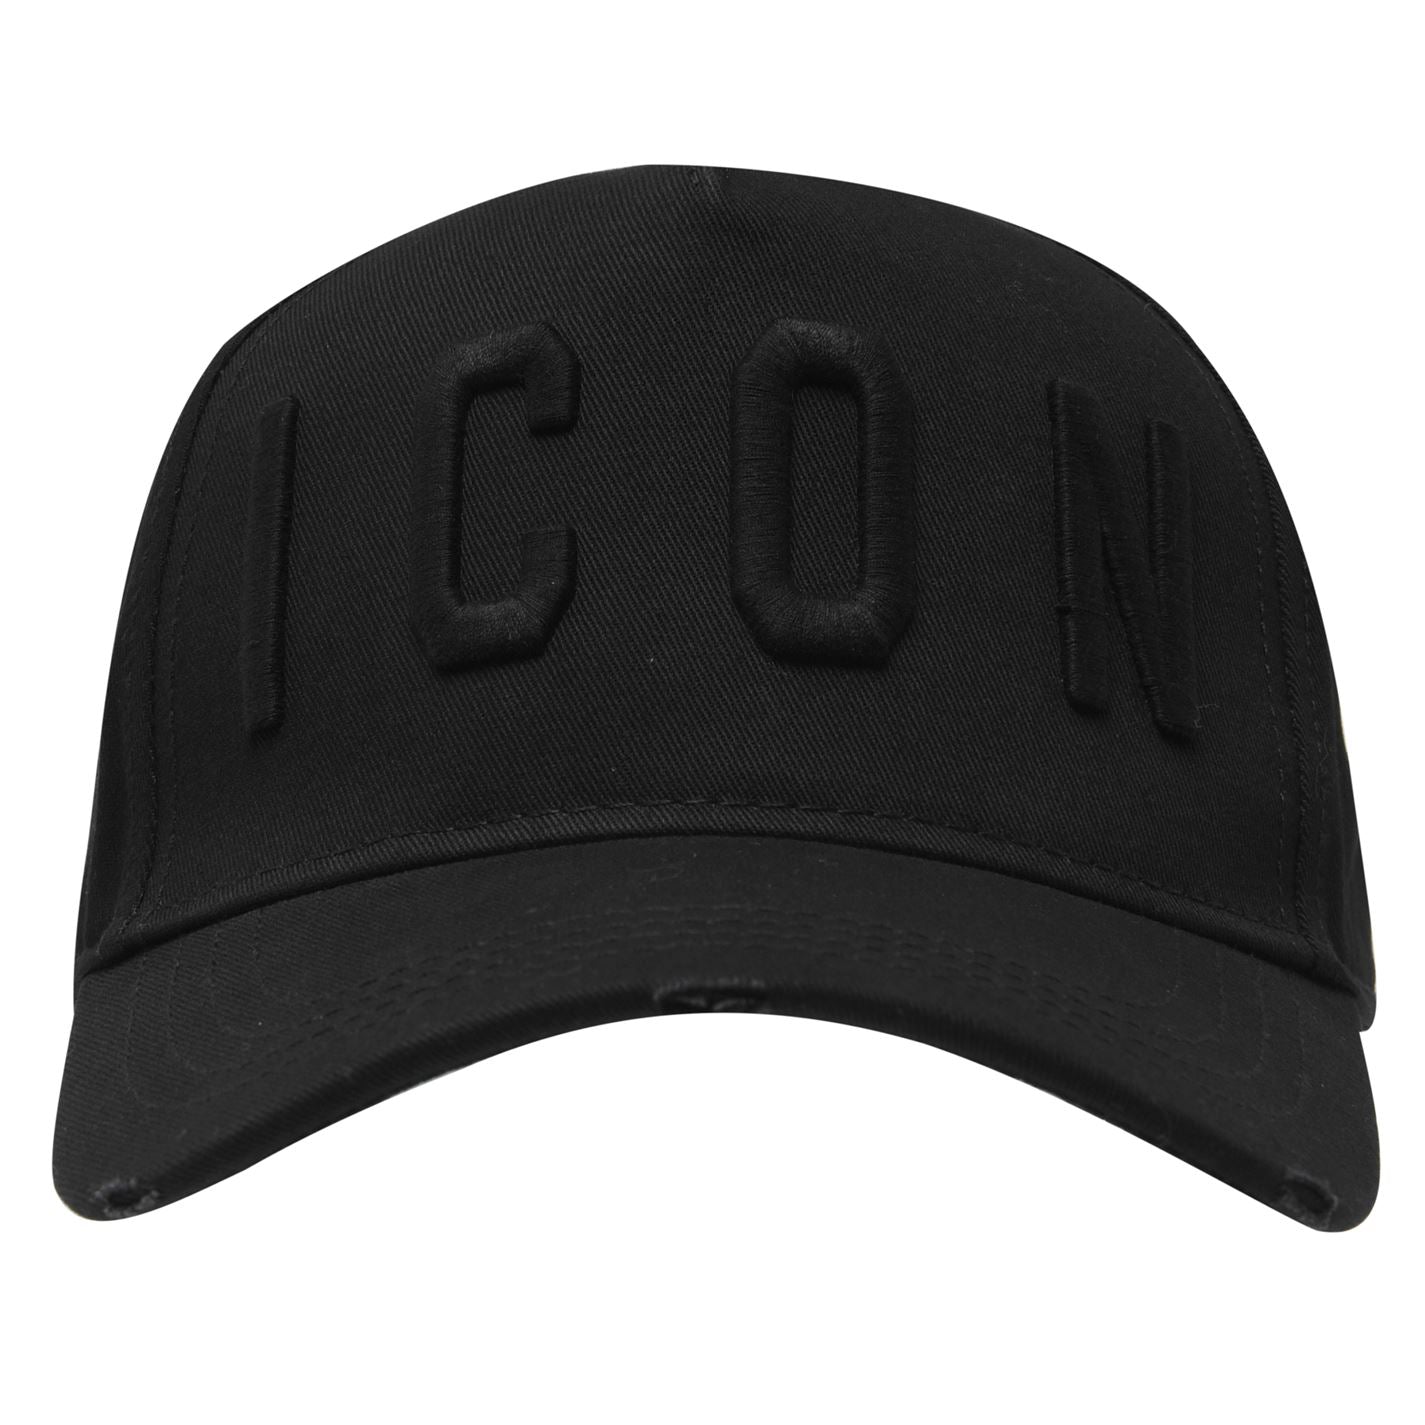 Dsquared2 BCM4001 ICON Baseball Cap - M084 Black/Black - Escape Menswear